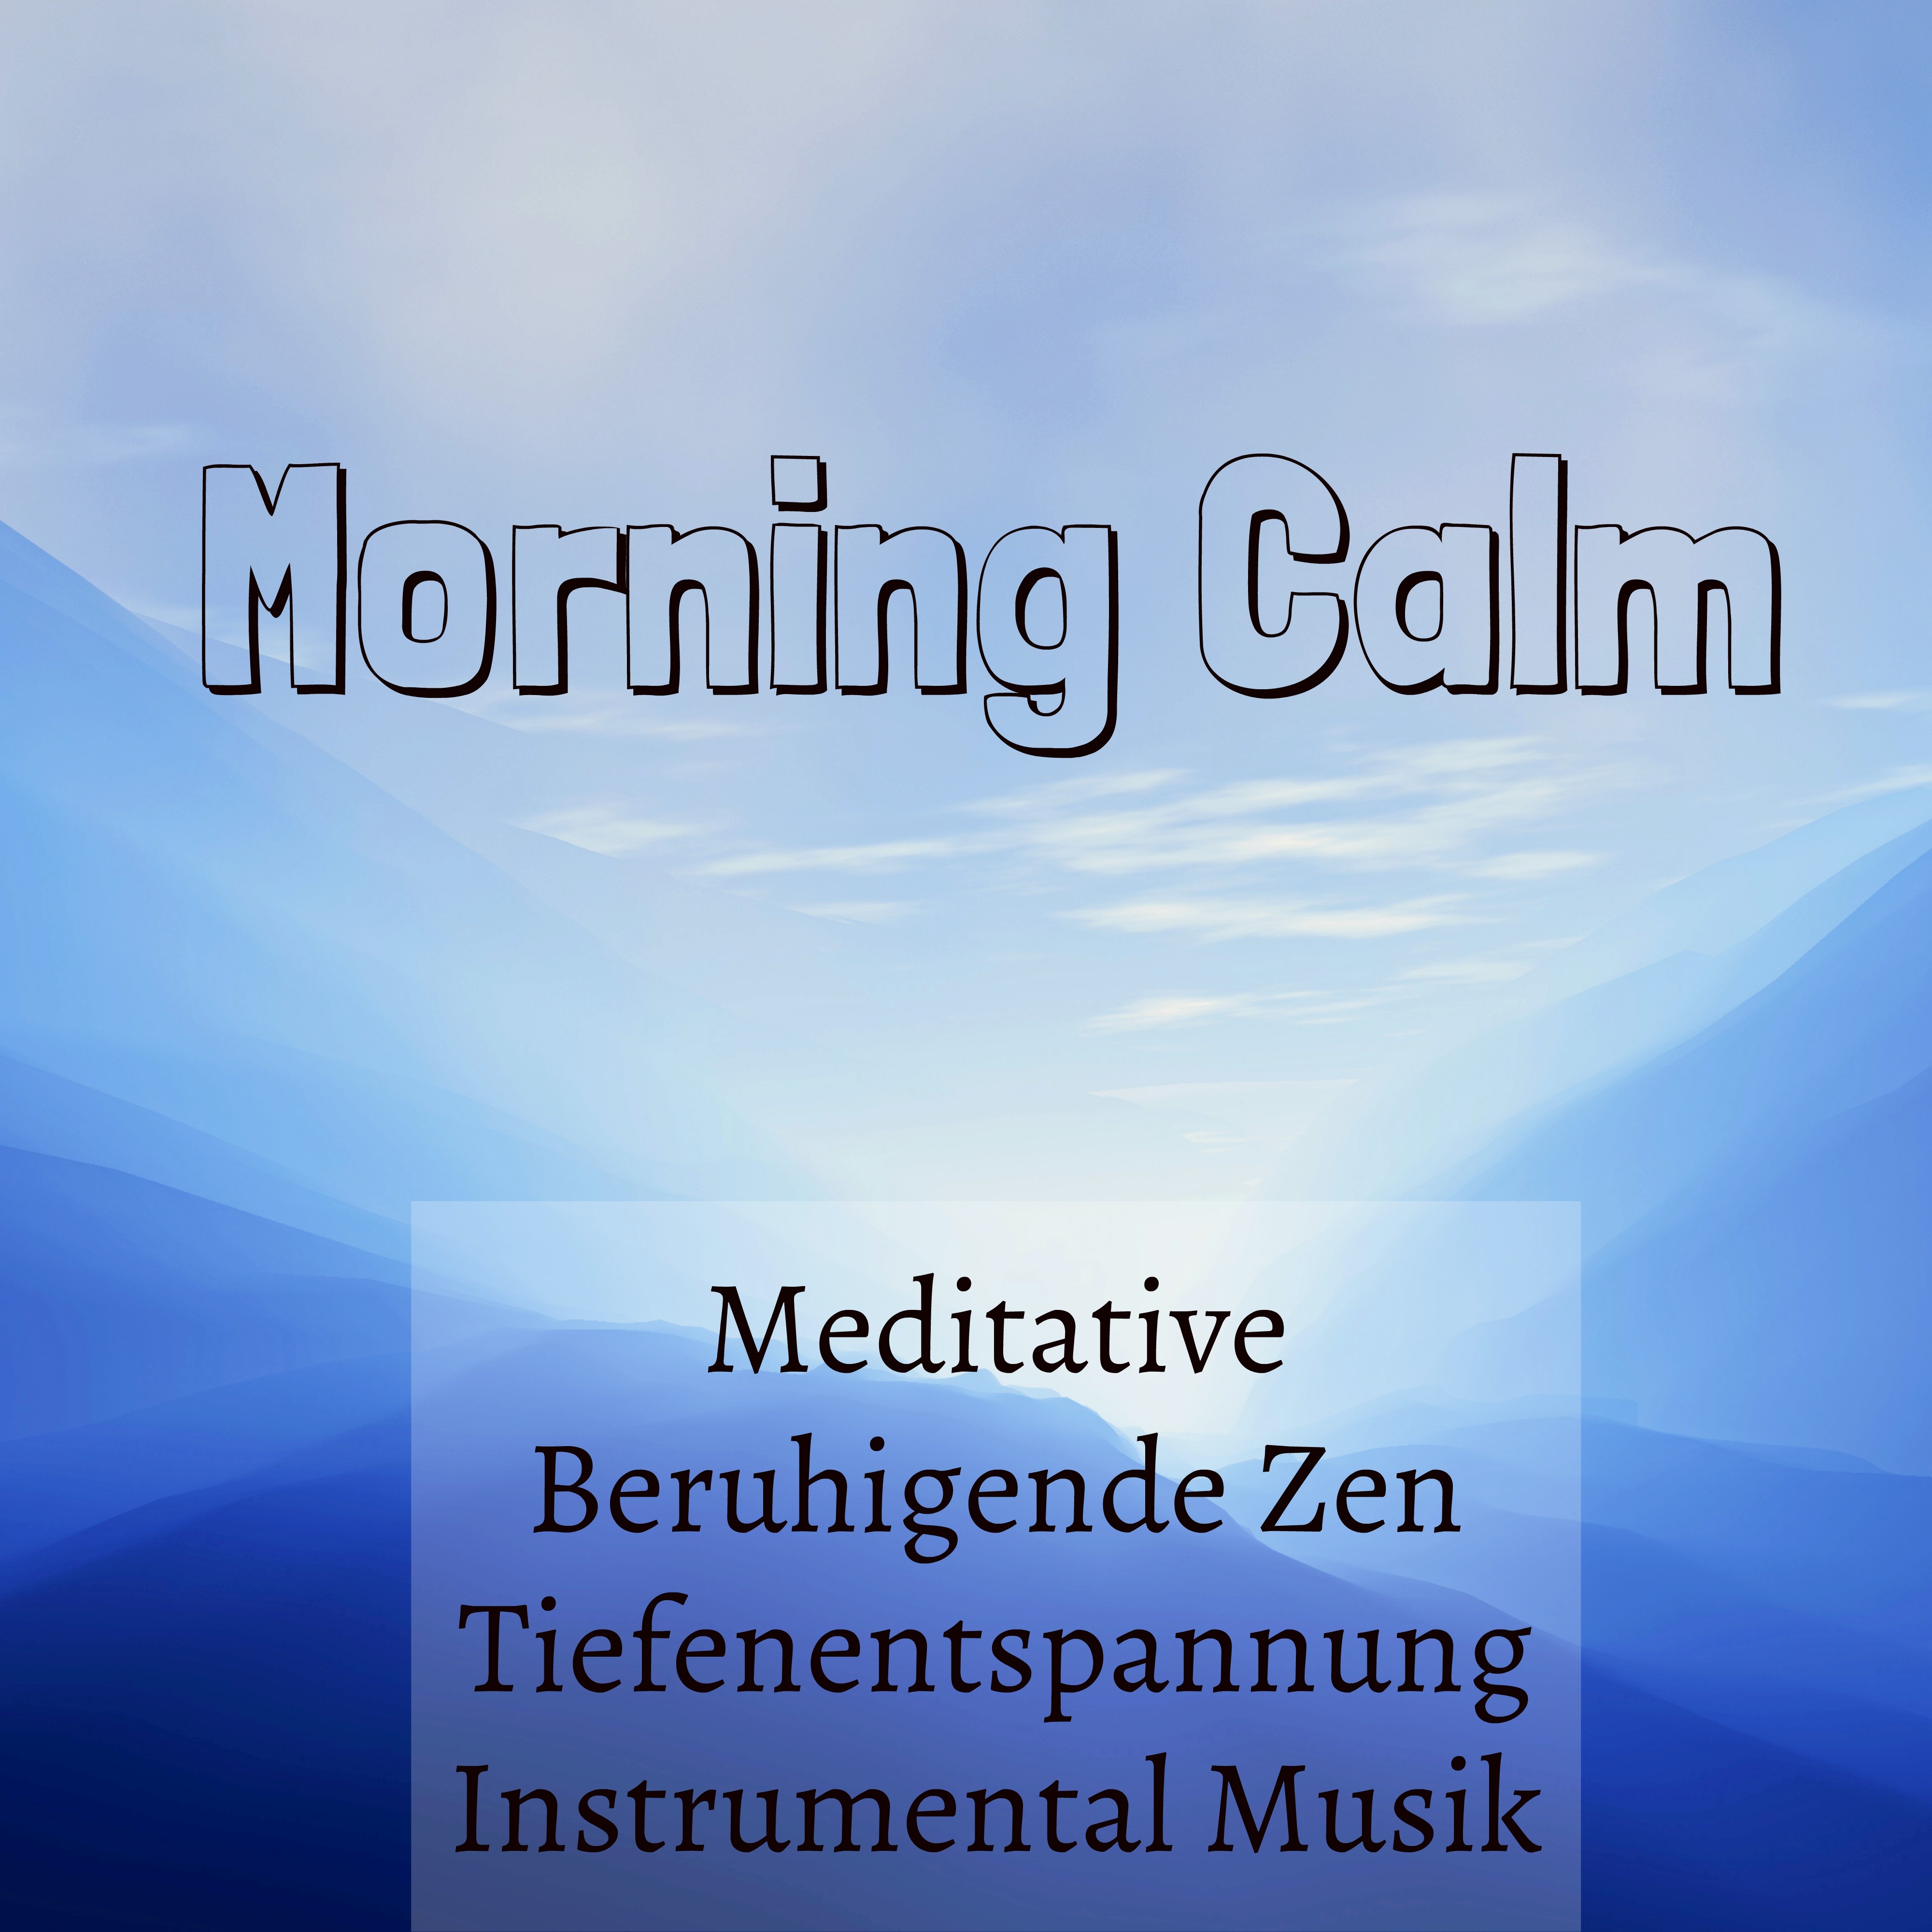 Morning Calm  Meditative Beruhigende Zen Tiefenentspannung Instrumental Musik fü r Fitnessü bungen Gefü hrte Meditation und Meditationstechniken